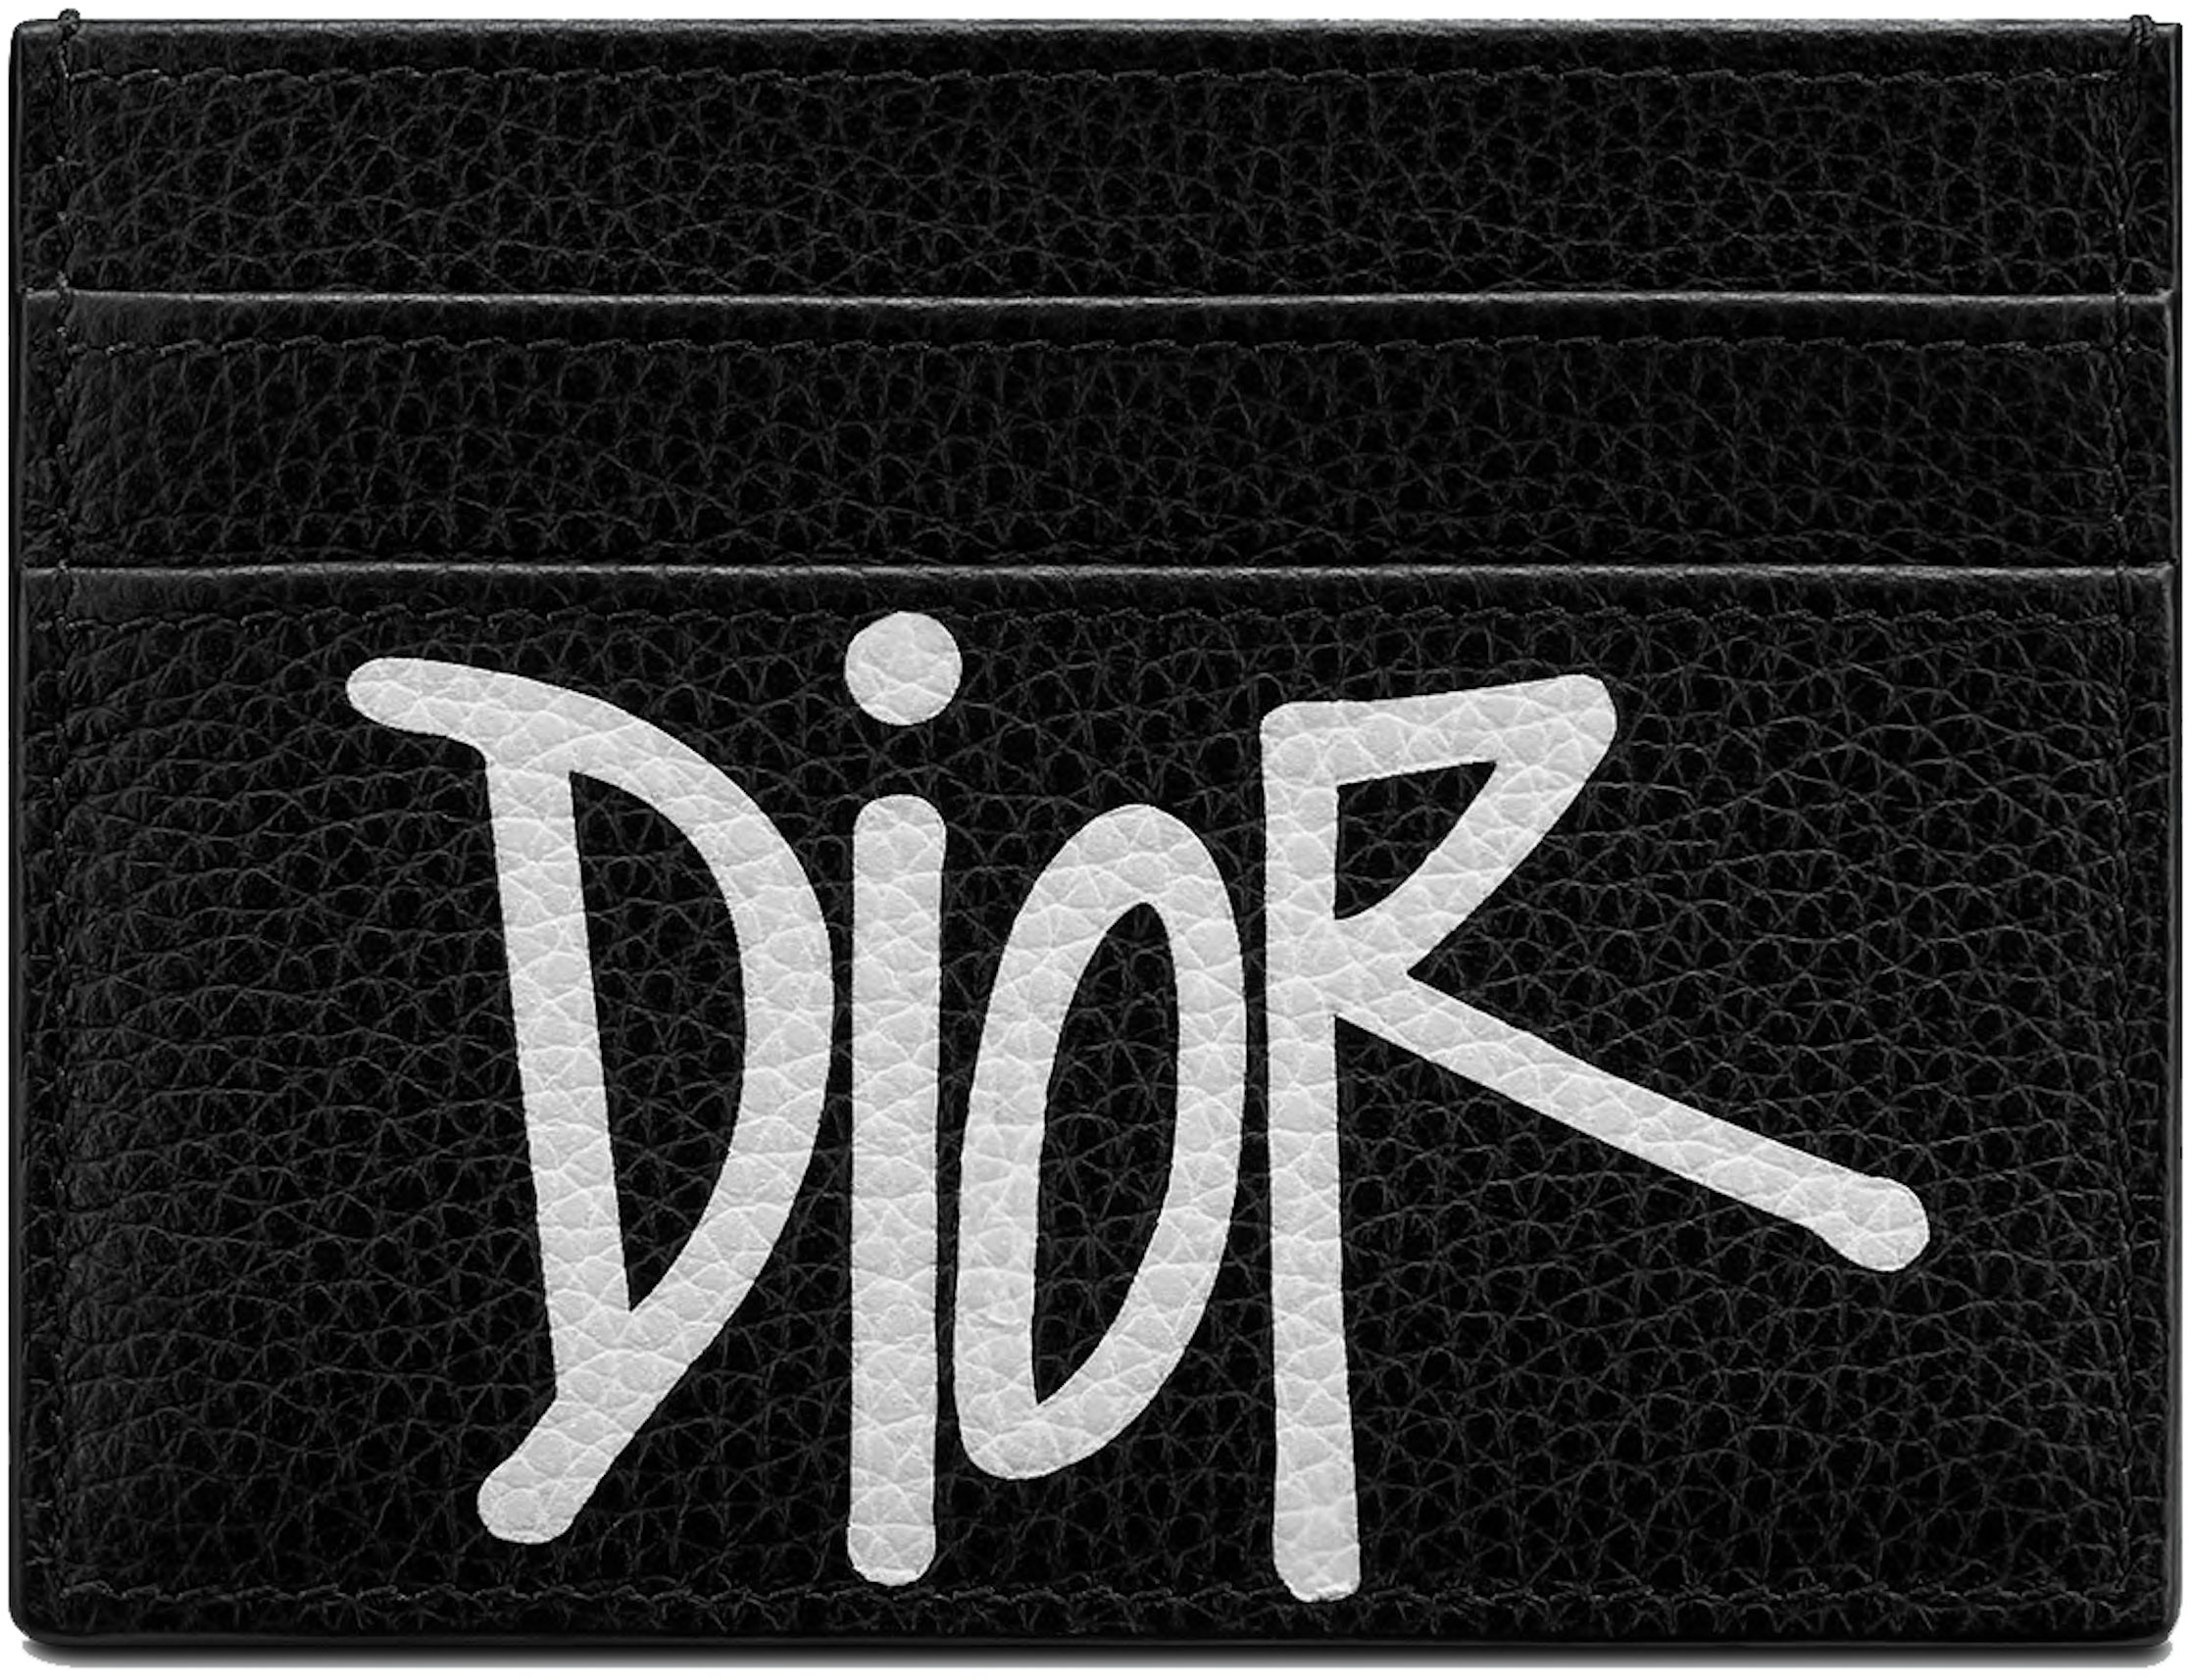 Dior Card Holder (6 Card Slot) Oblique Jacquard Black